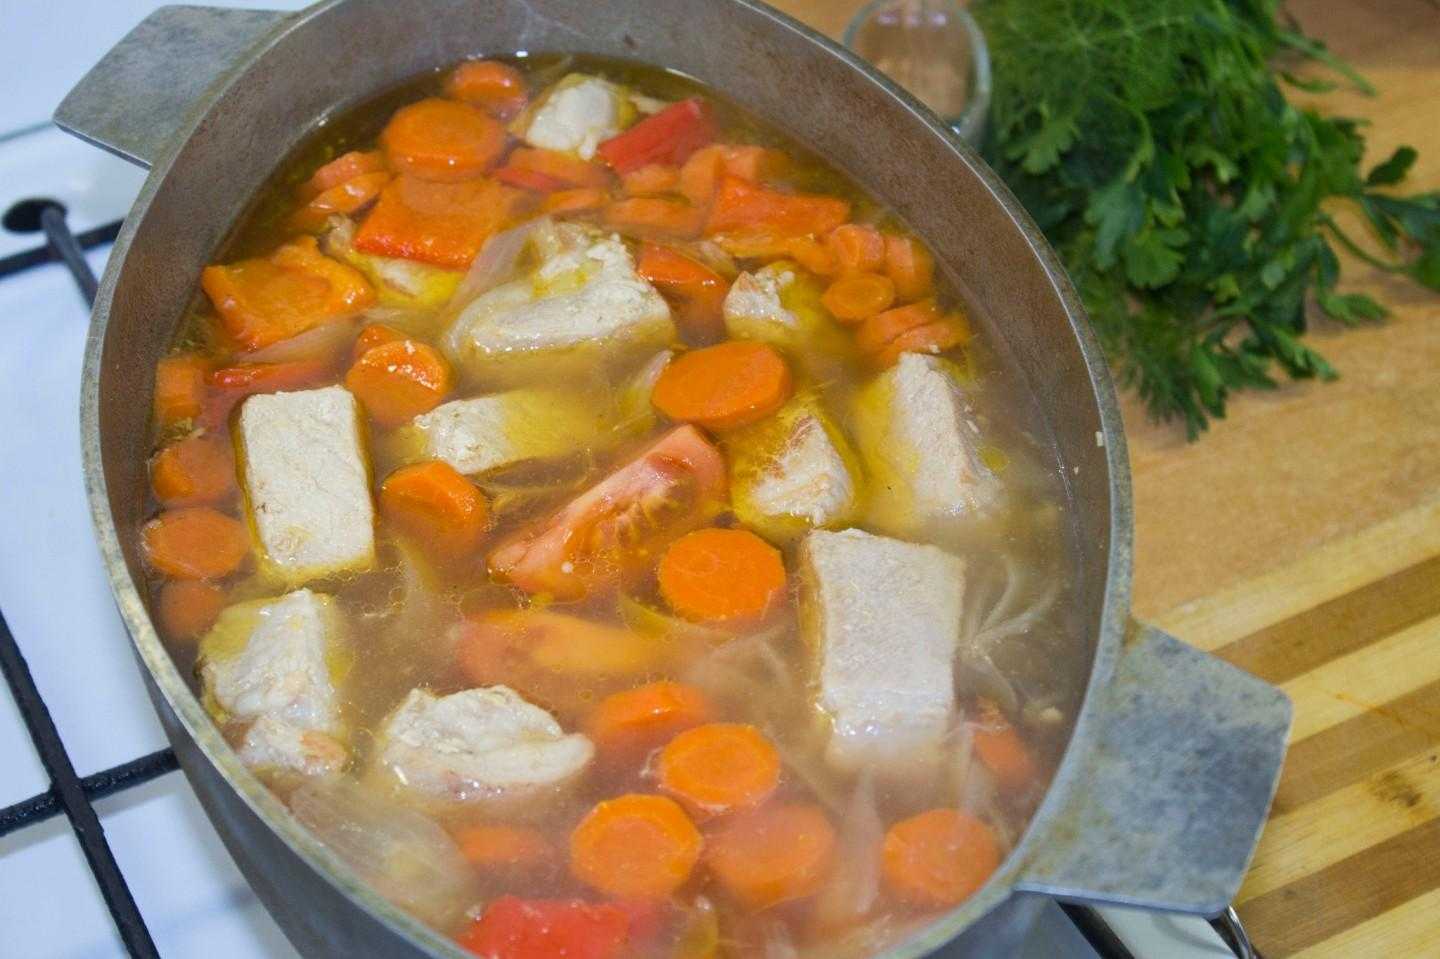 Шурпа - что это за суп, список ингредиентов и специй, как готовить из баранины, индейки или говядины